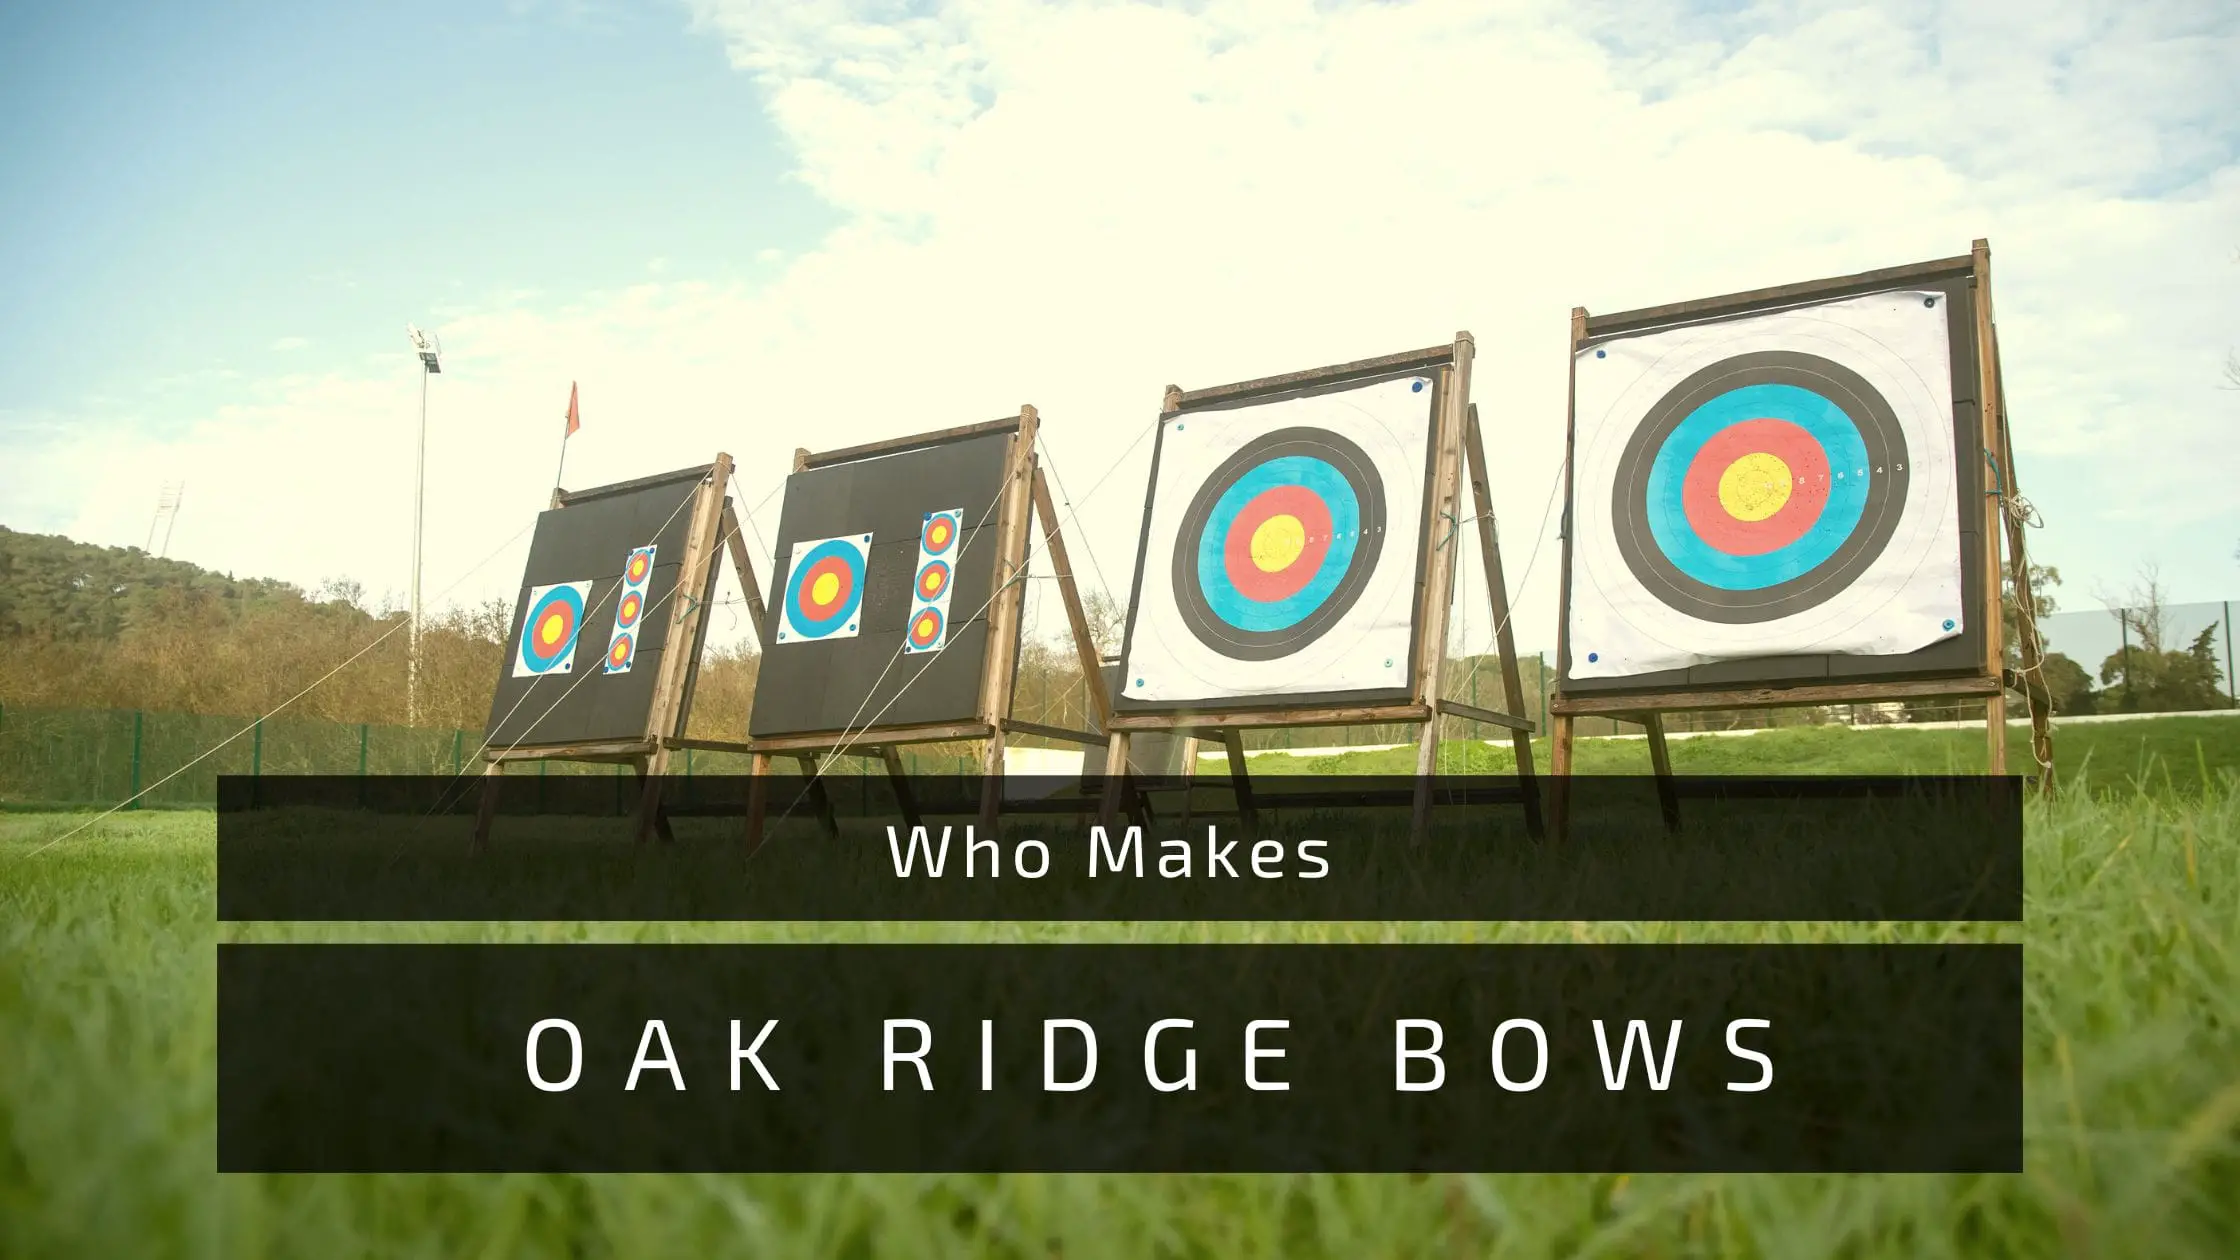 Who Makes Oak ridge bows